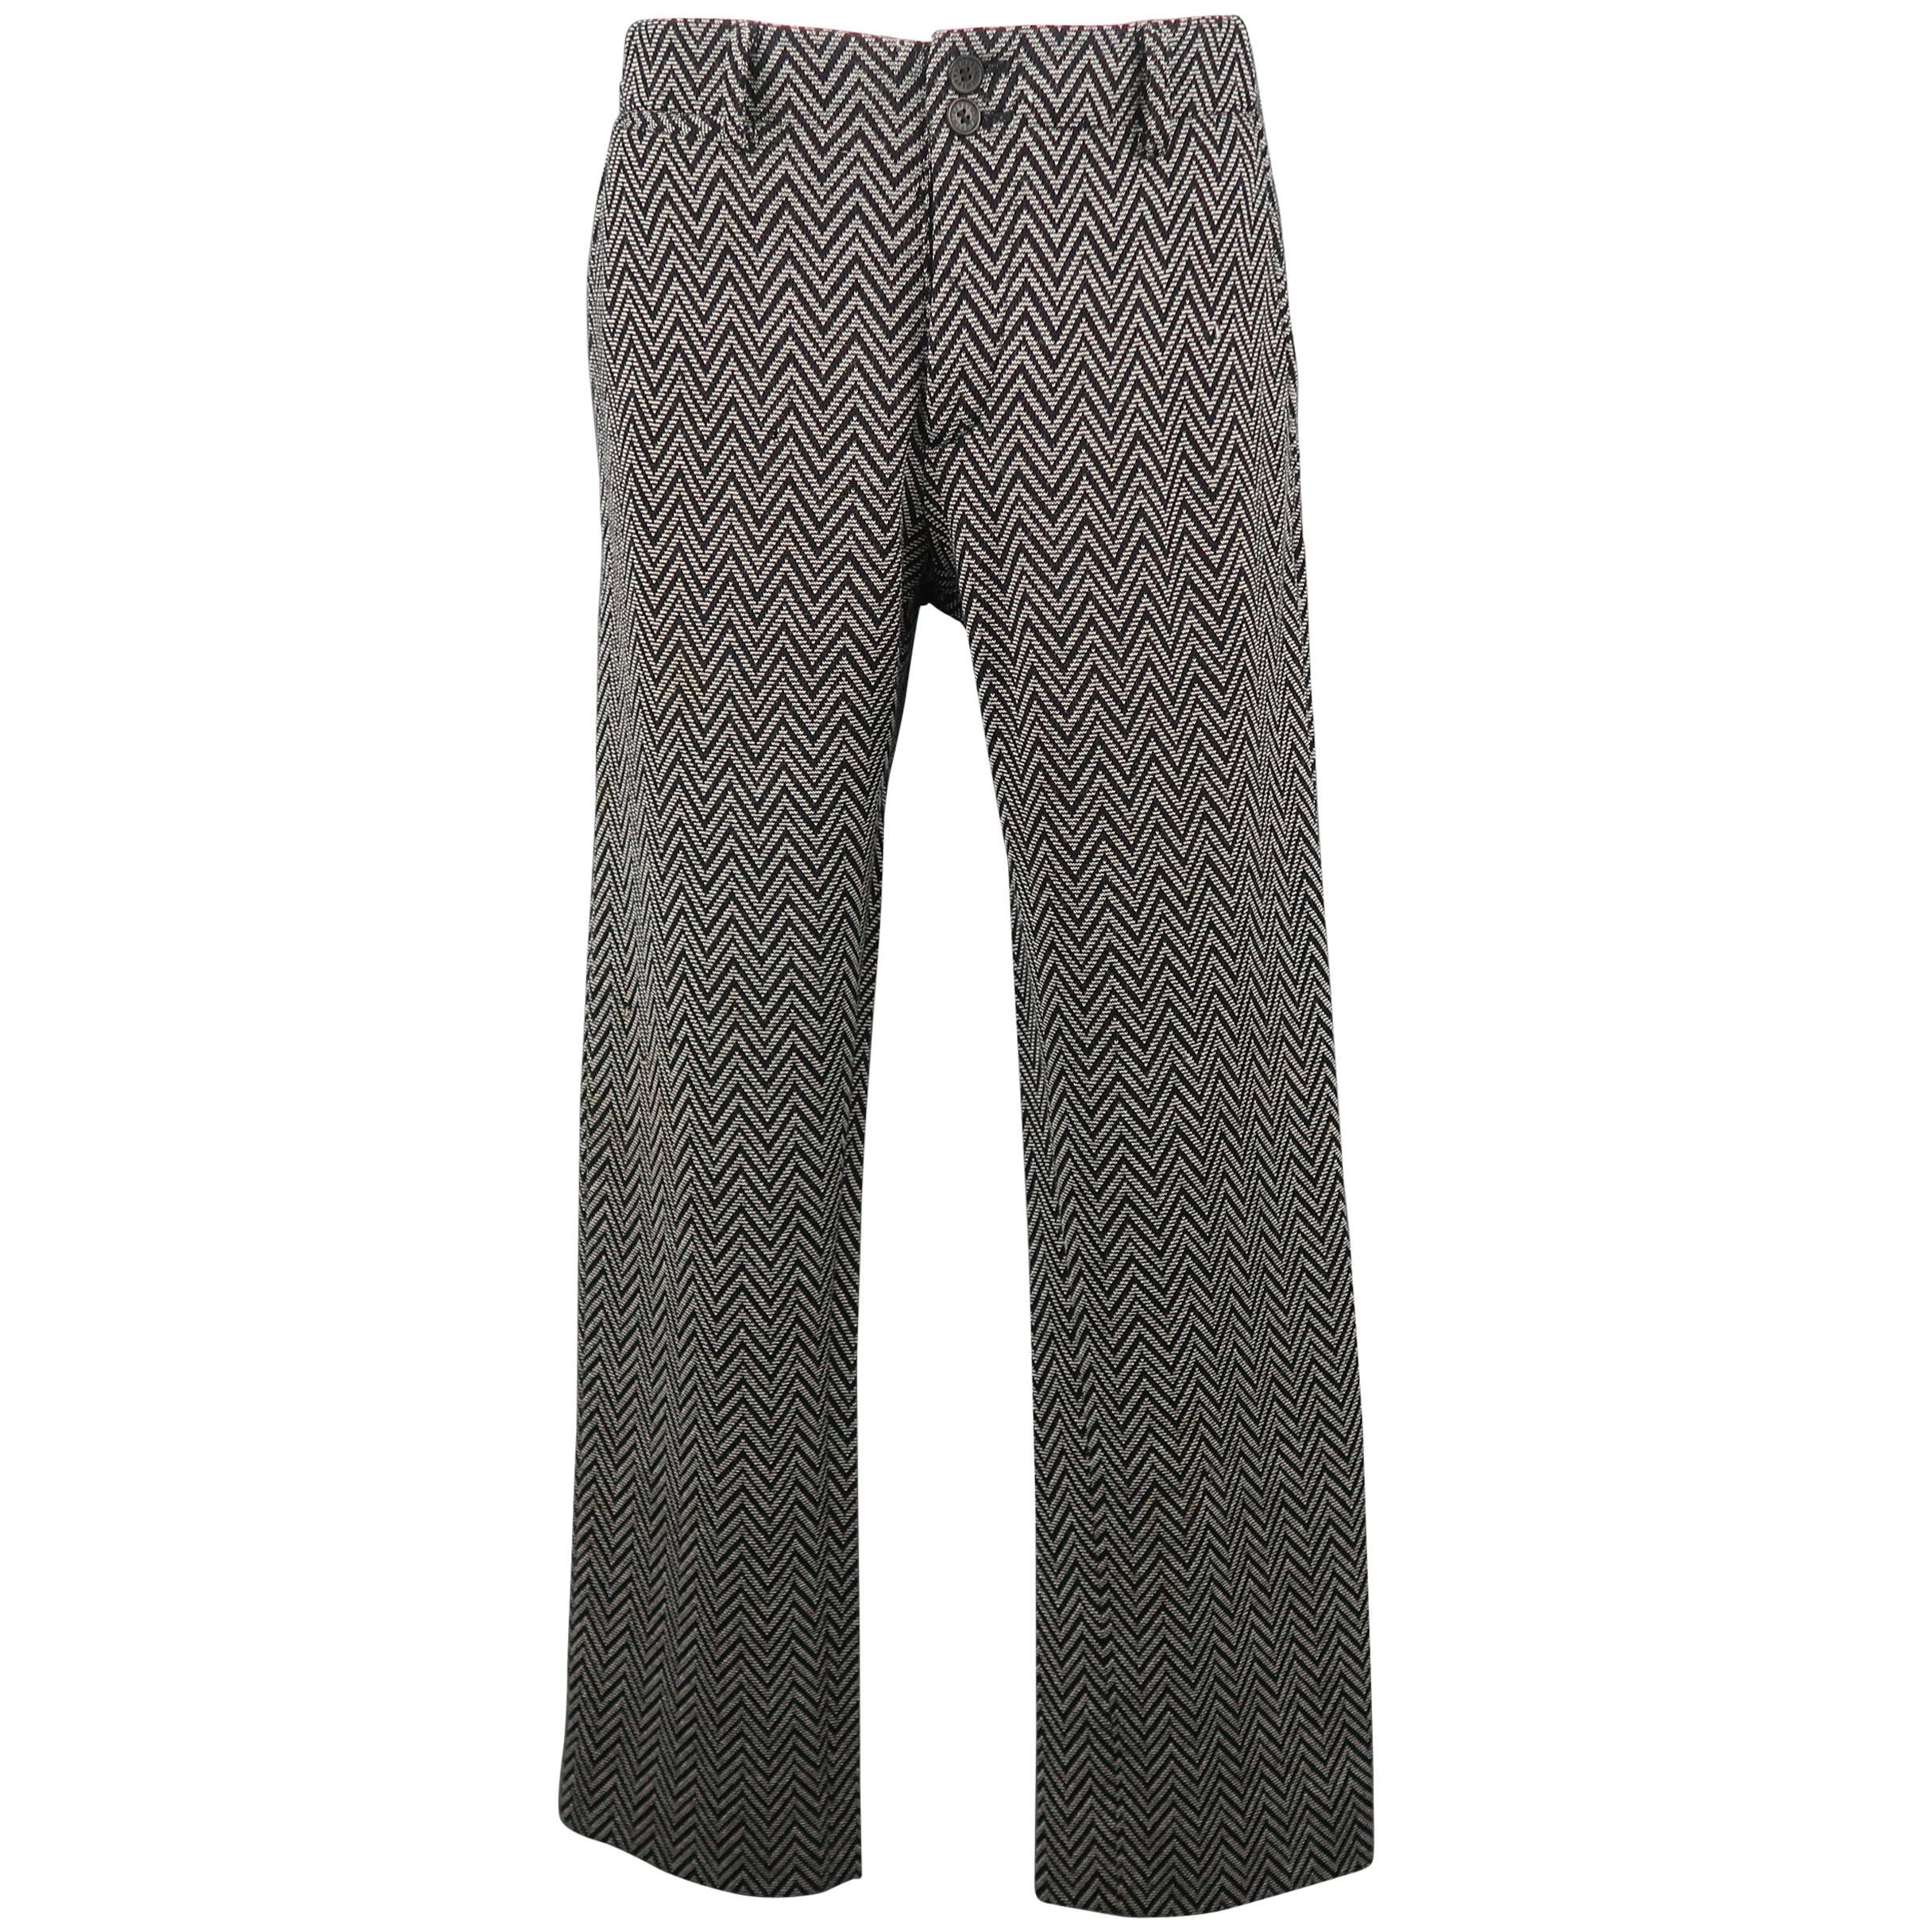 Men's MISSONI Size 30 Gray Chevron Print Wool / Nylon Knit Pants